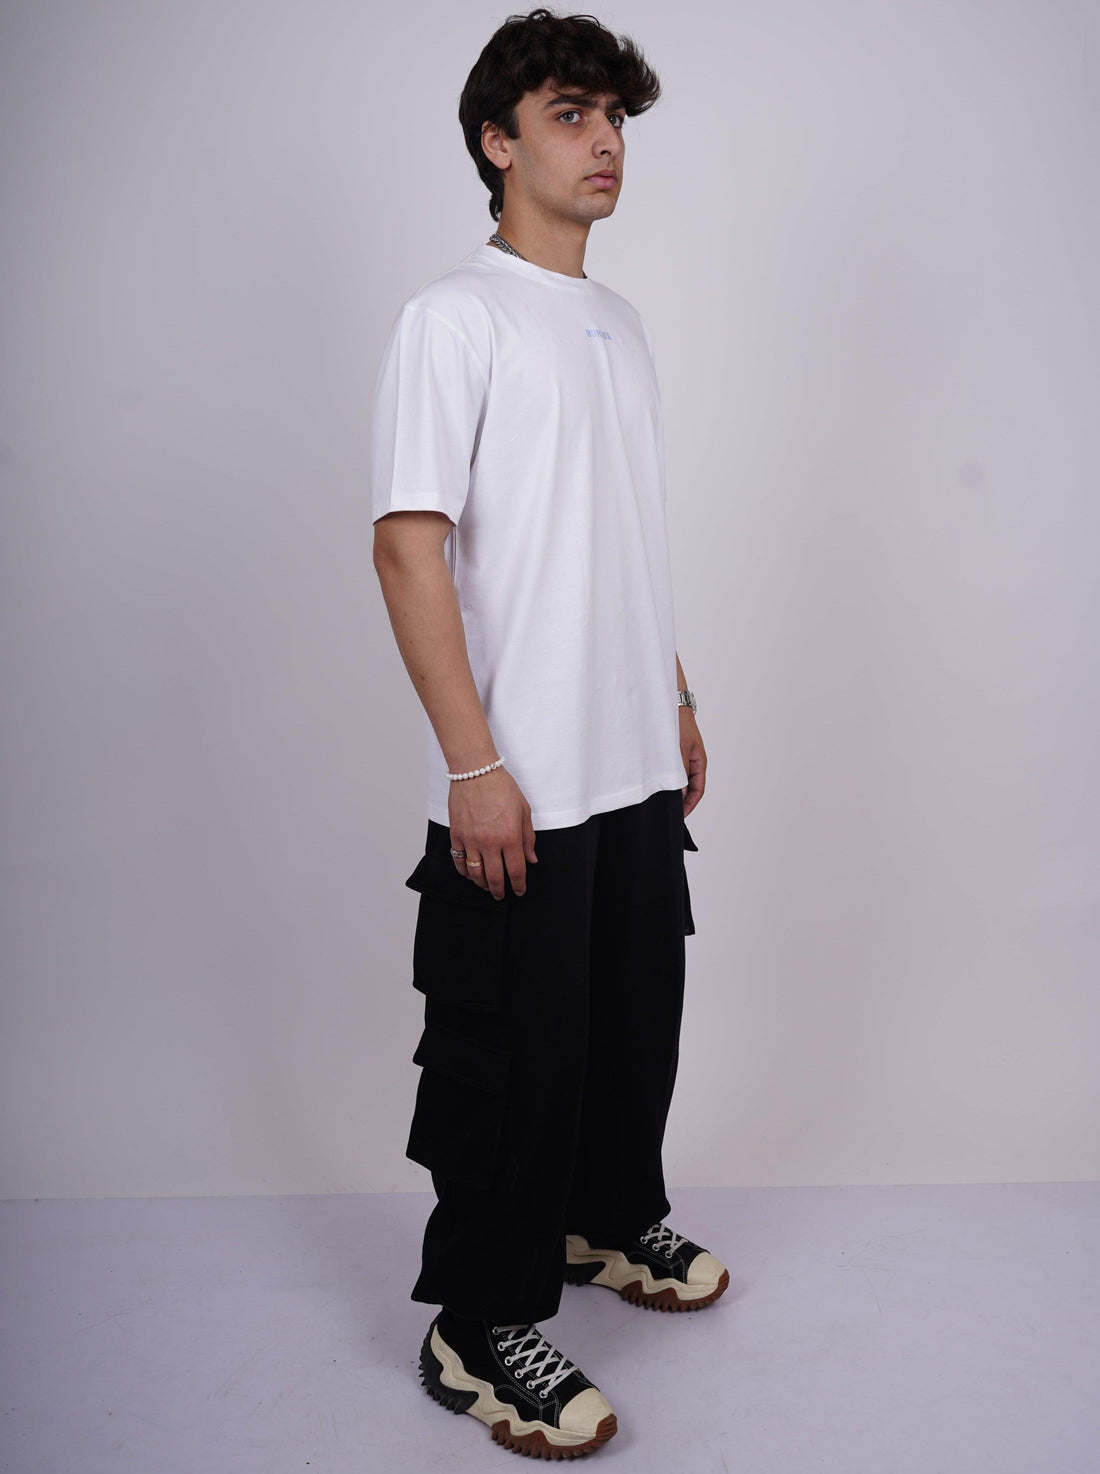 Jujutsu Kaisen: Nobara Kugisaki Drop-Sleeved Tee (T-shirt) For Men - BurgerBae